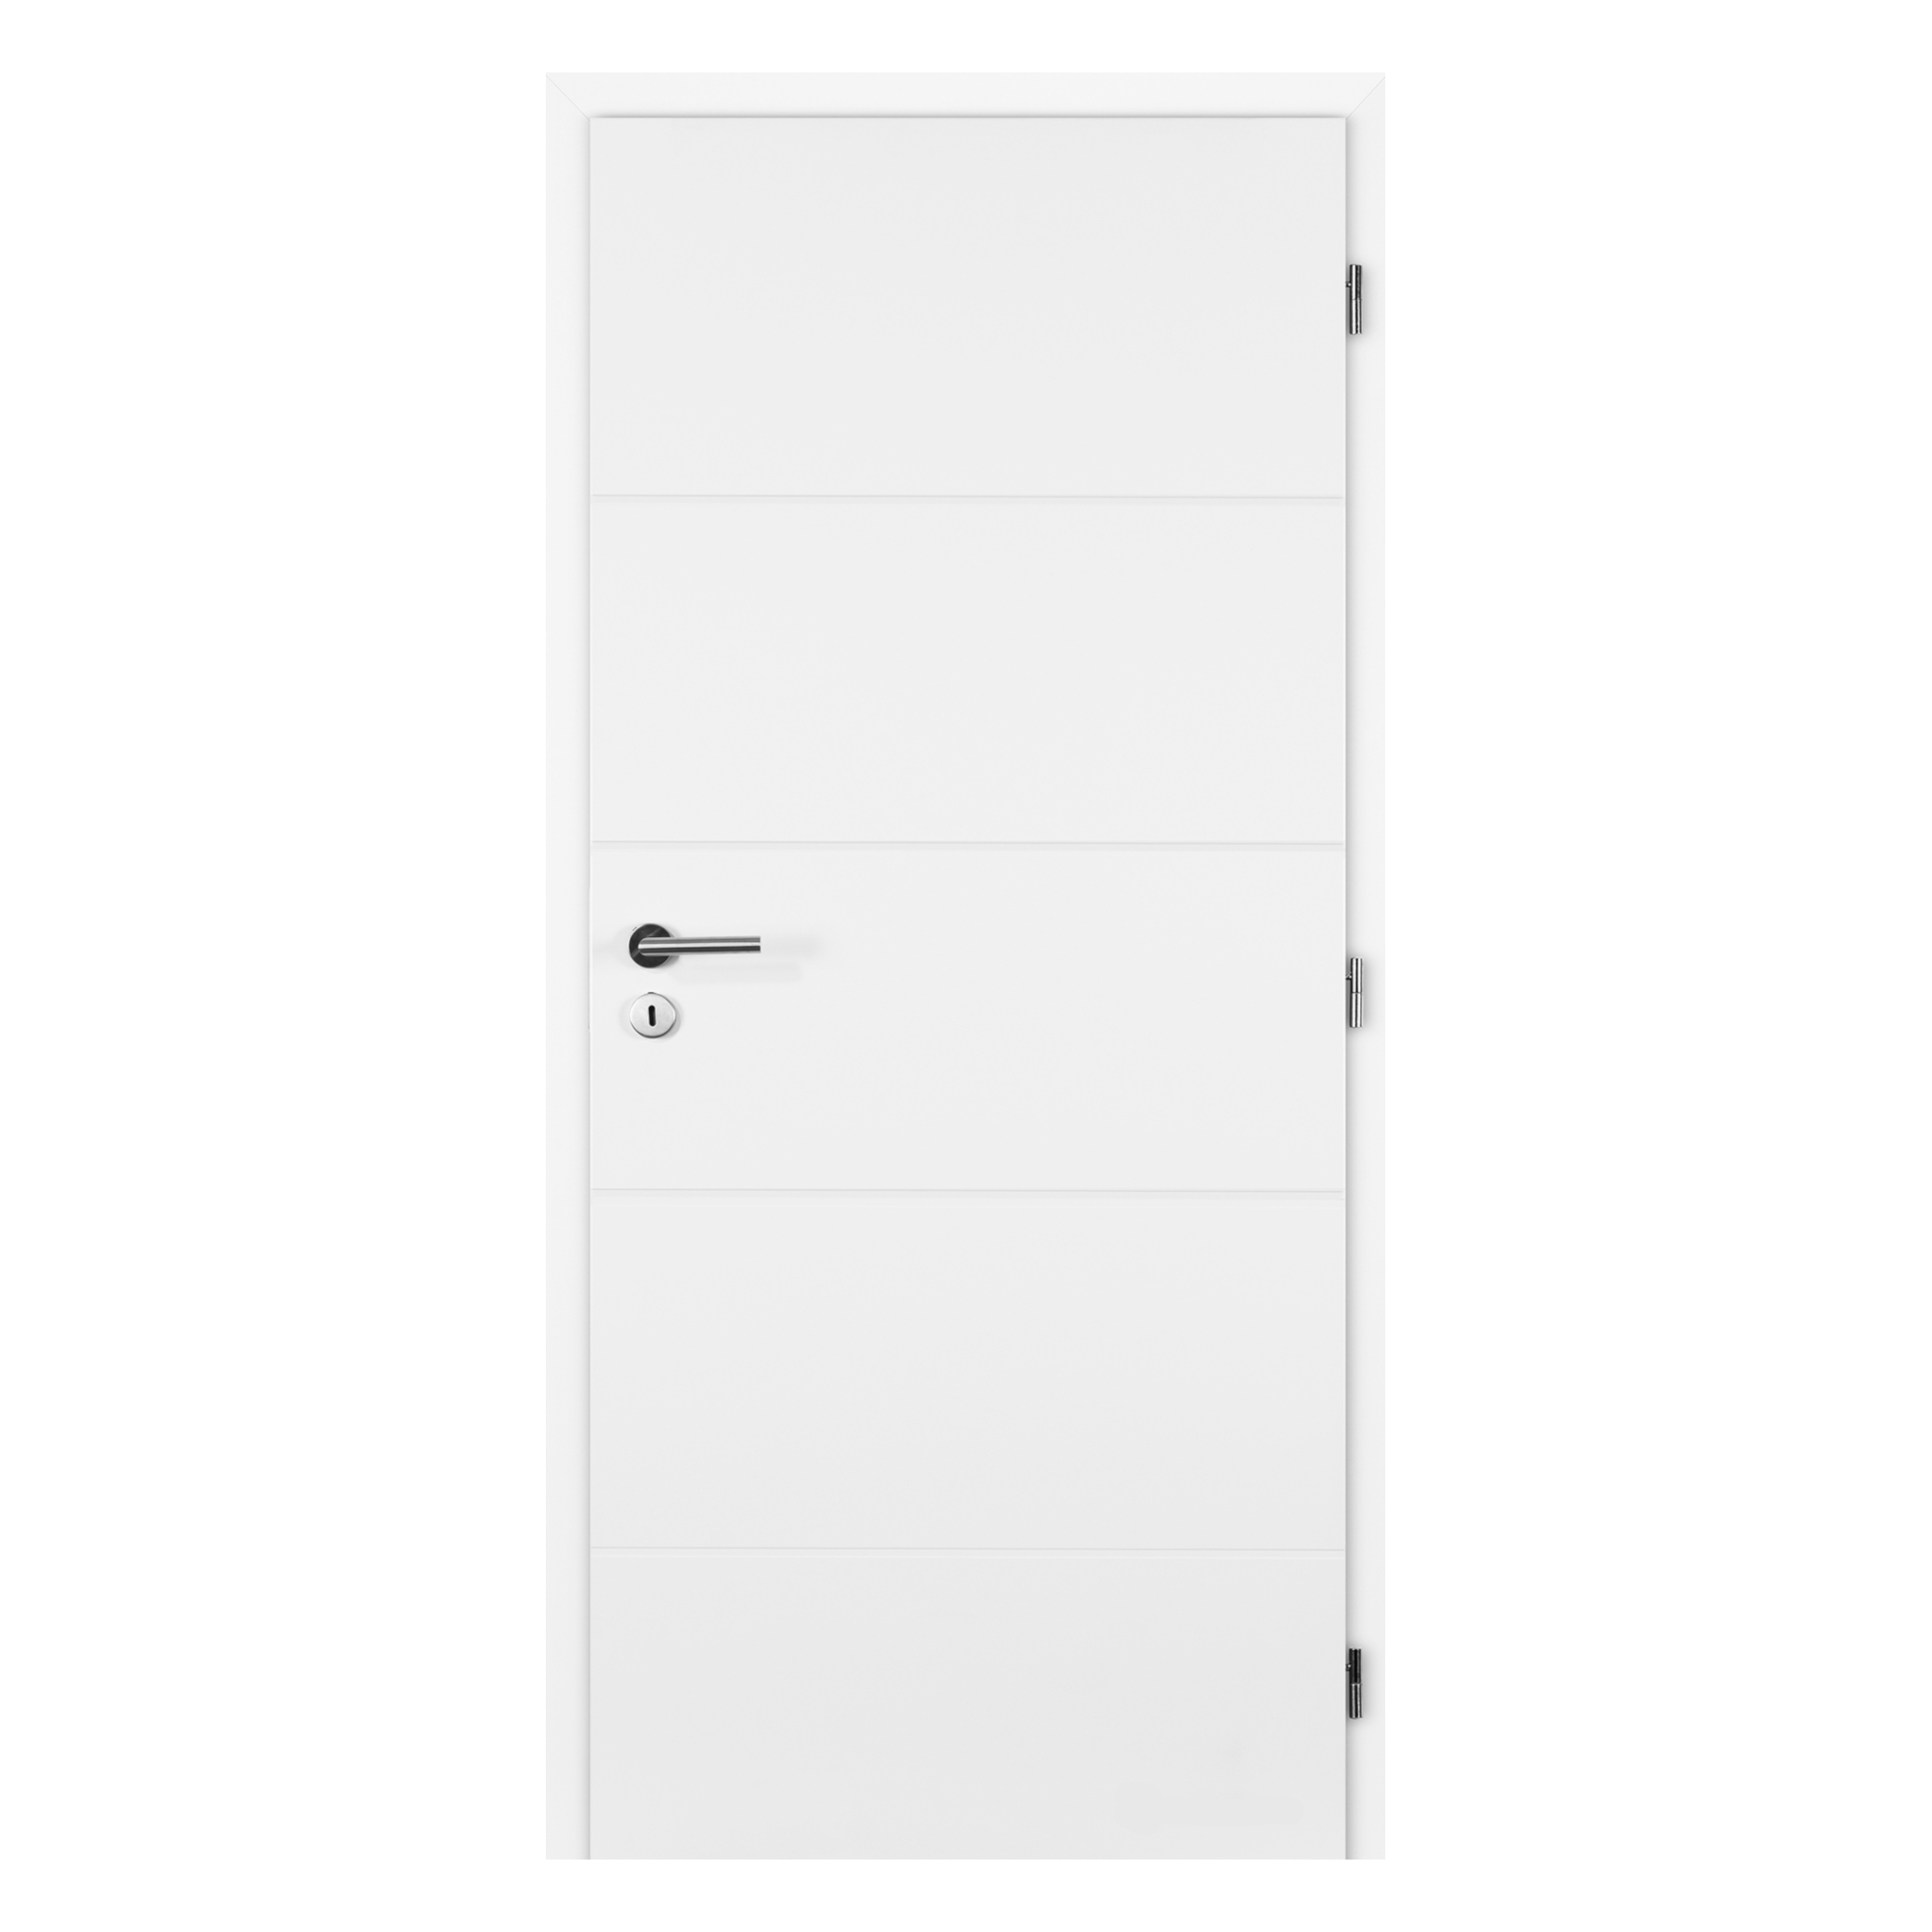 Dveře plné profilované Doornite Quatro bílé pravé 700 mm